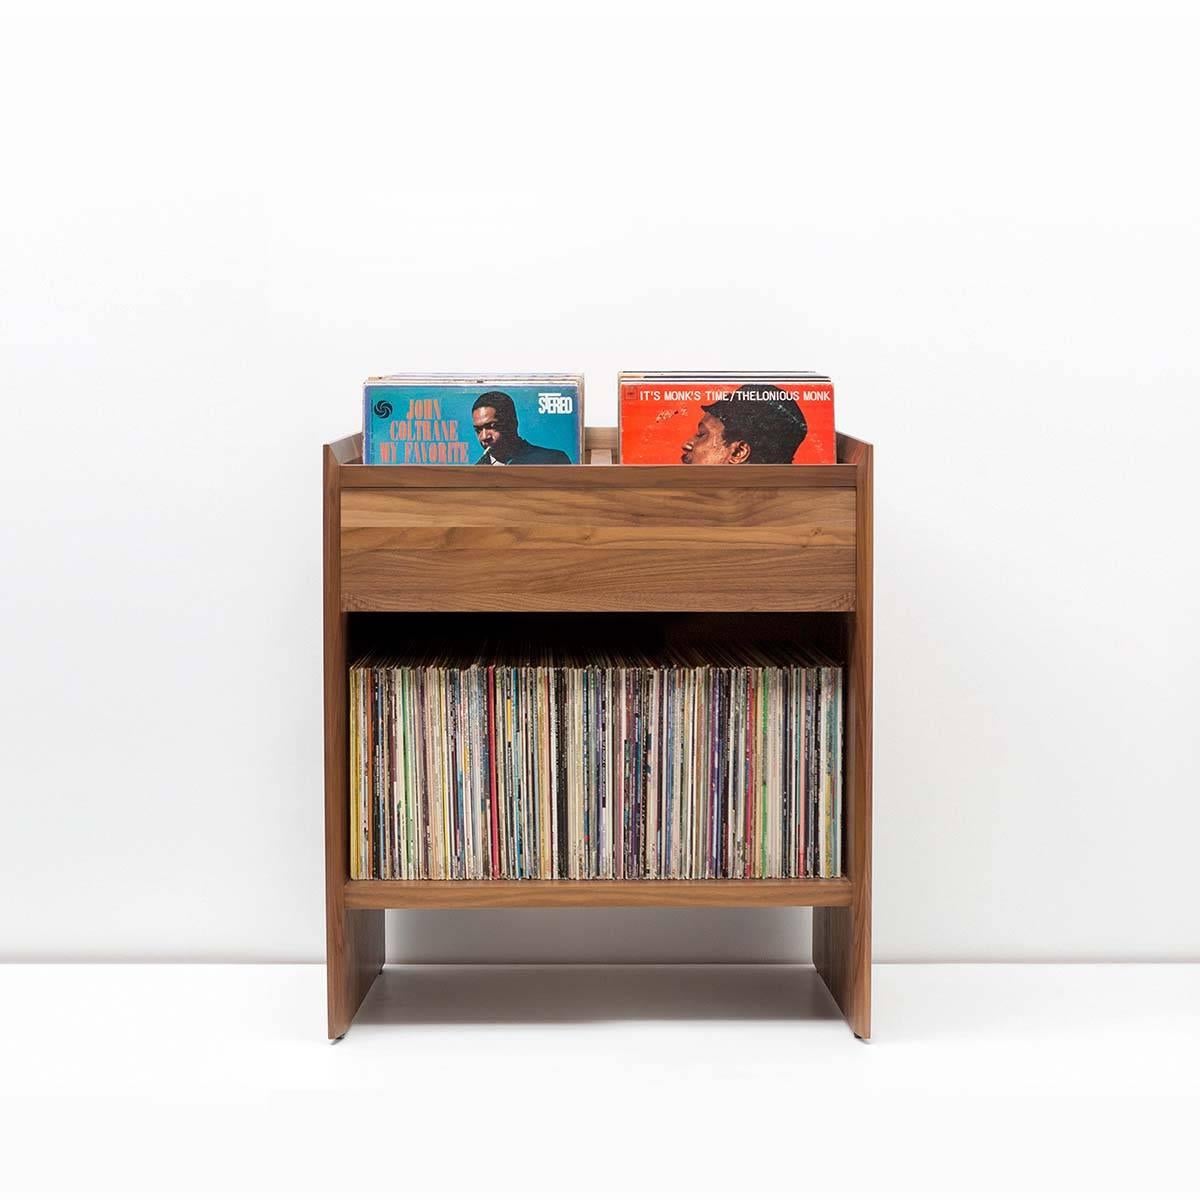 L'armoire de rangement pour disques vinyles Unison est une solution autonome parfaite pour le rangement des disques vinyles. Elle peut également être associée à n'importe quel support pour disques Unison, permettant ainsi un rangement supplémentaire